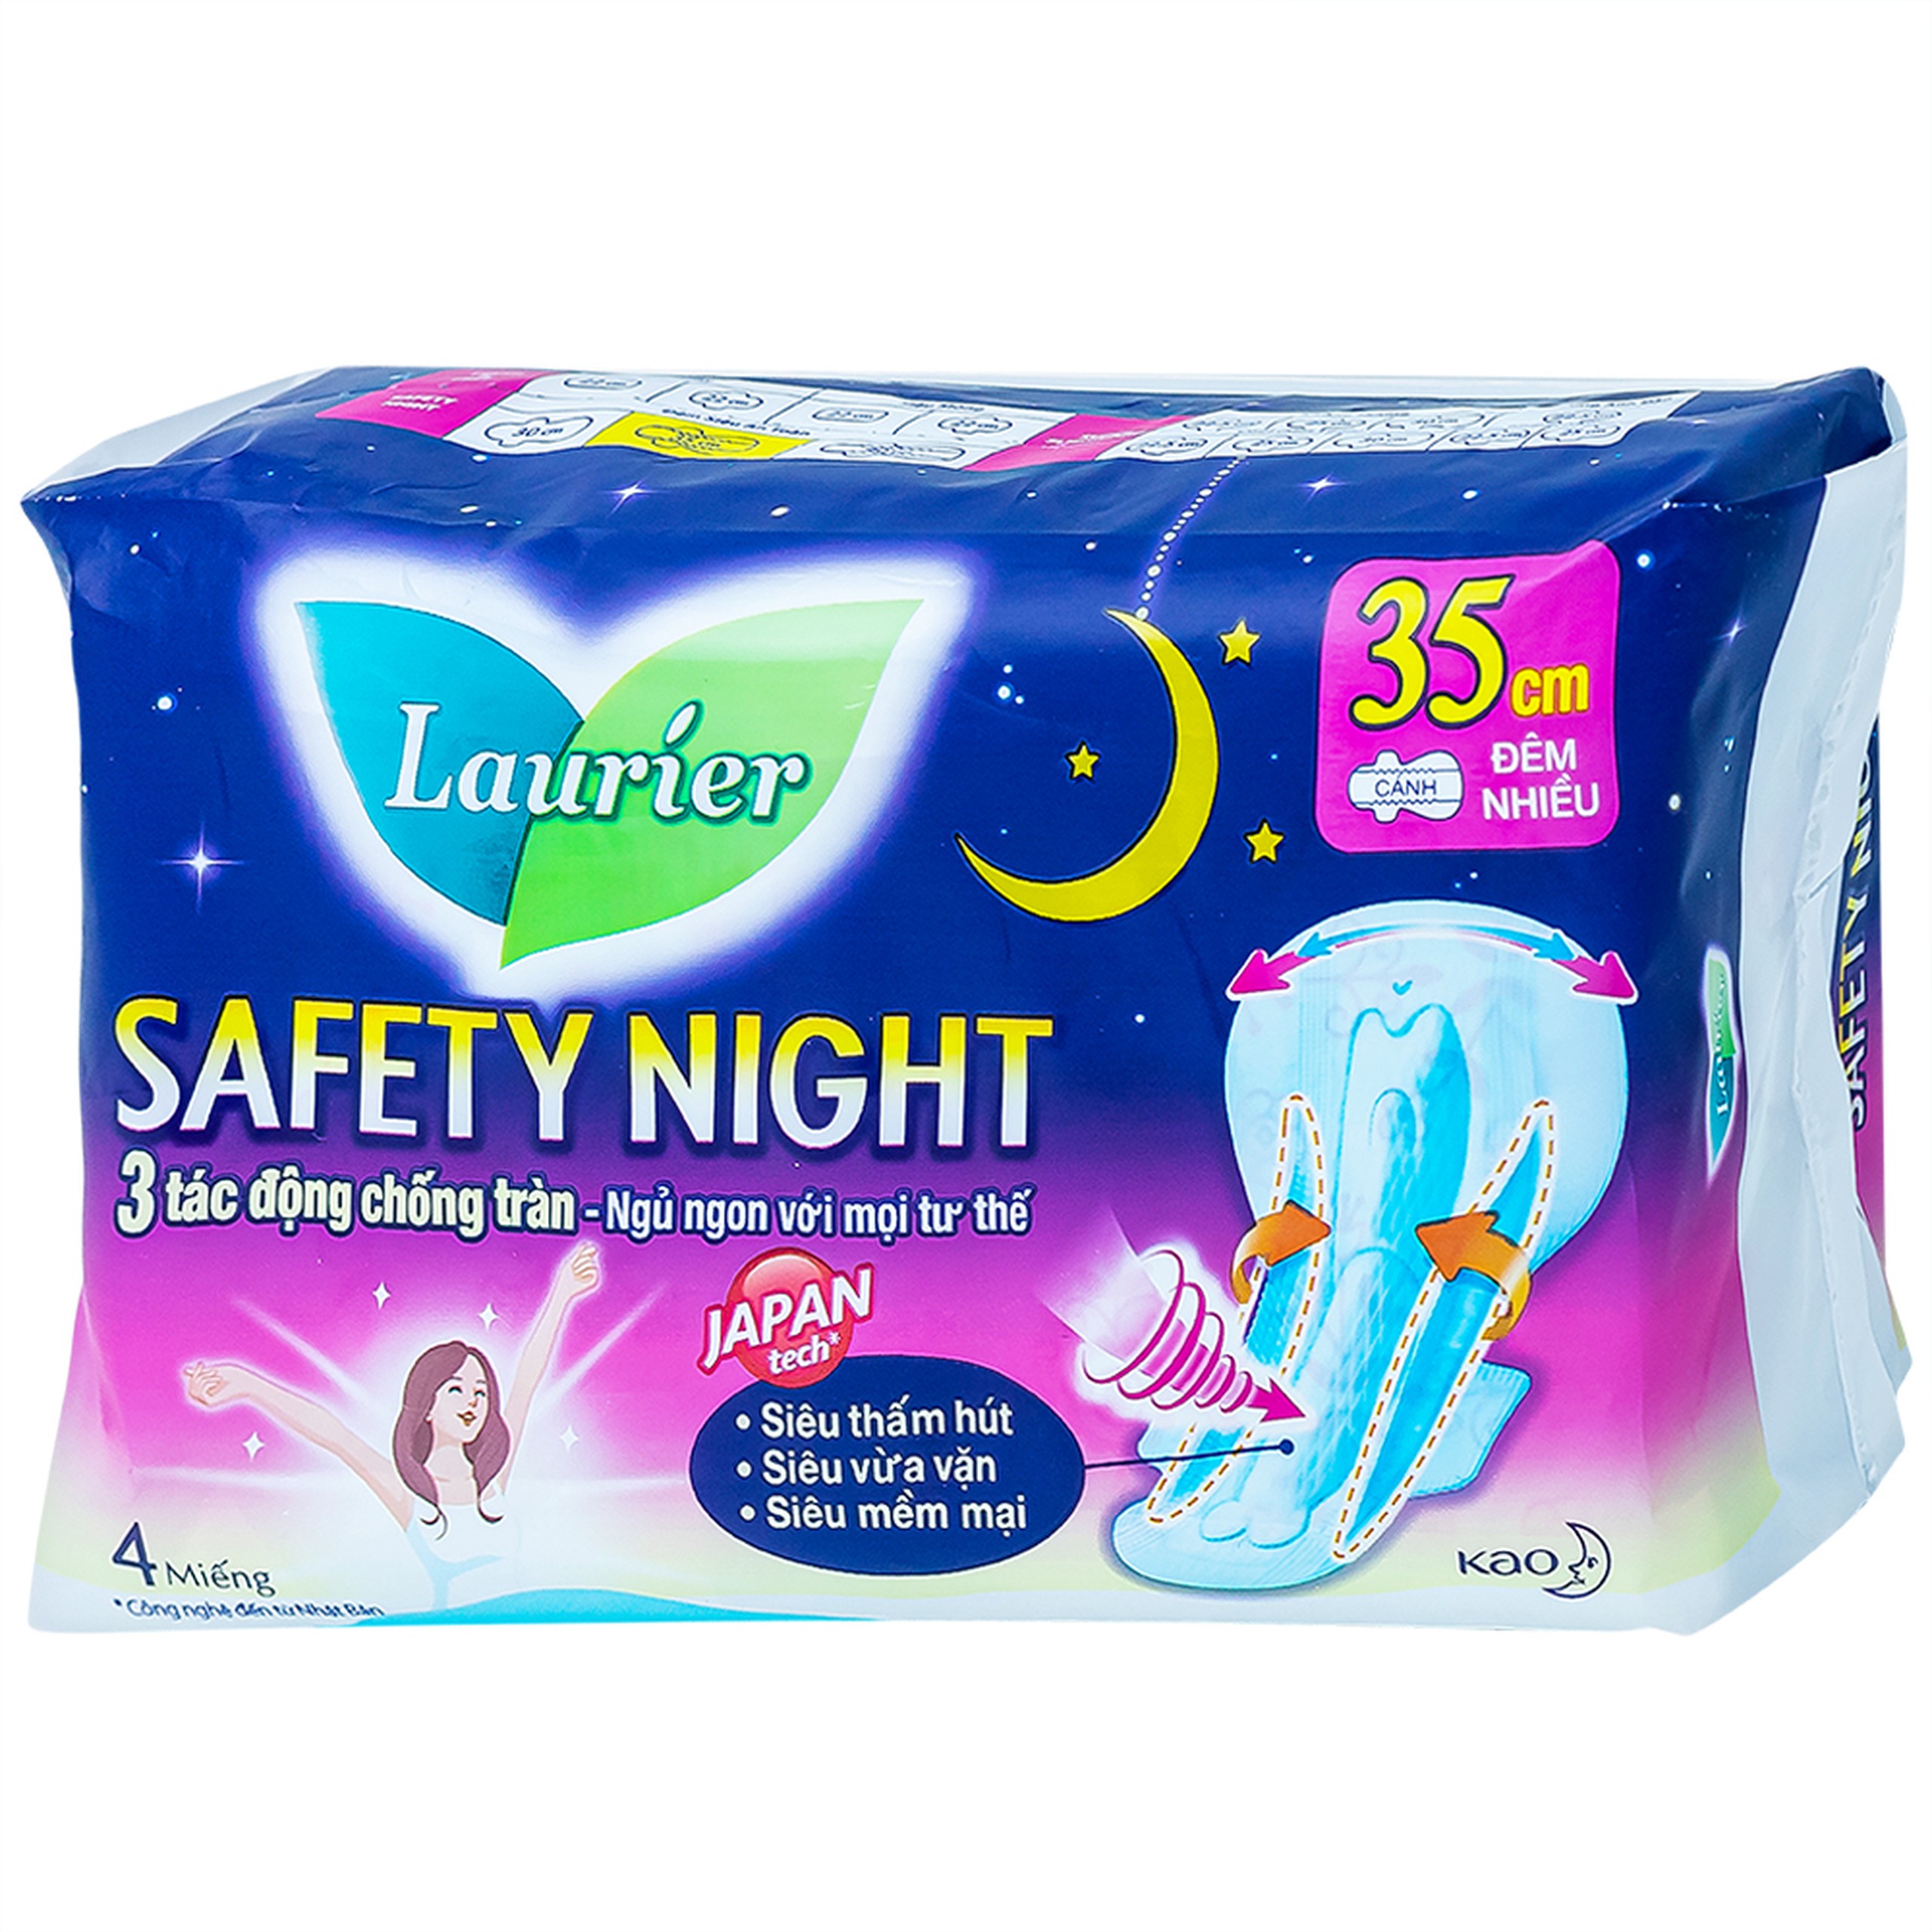 Băng vệ sinh ban đêm Laurier Safety Night Kao thấm hút nhanh (4 miếng x 35cm)